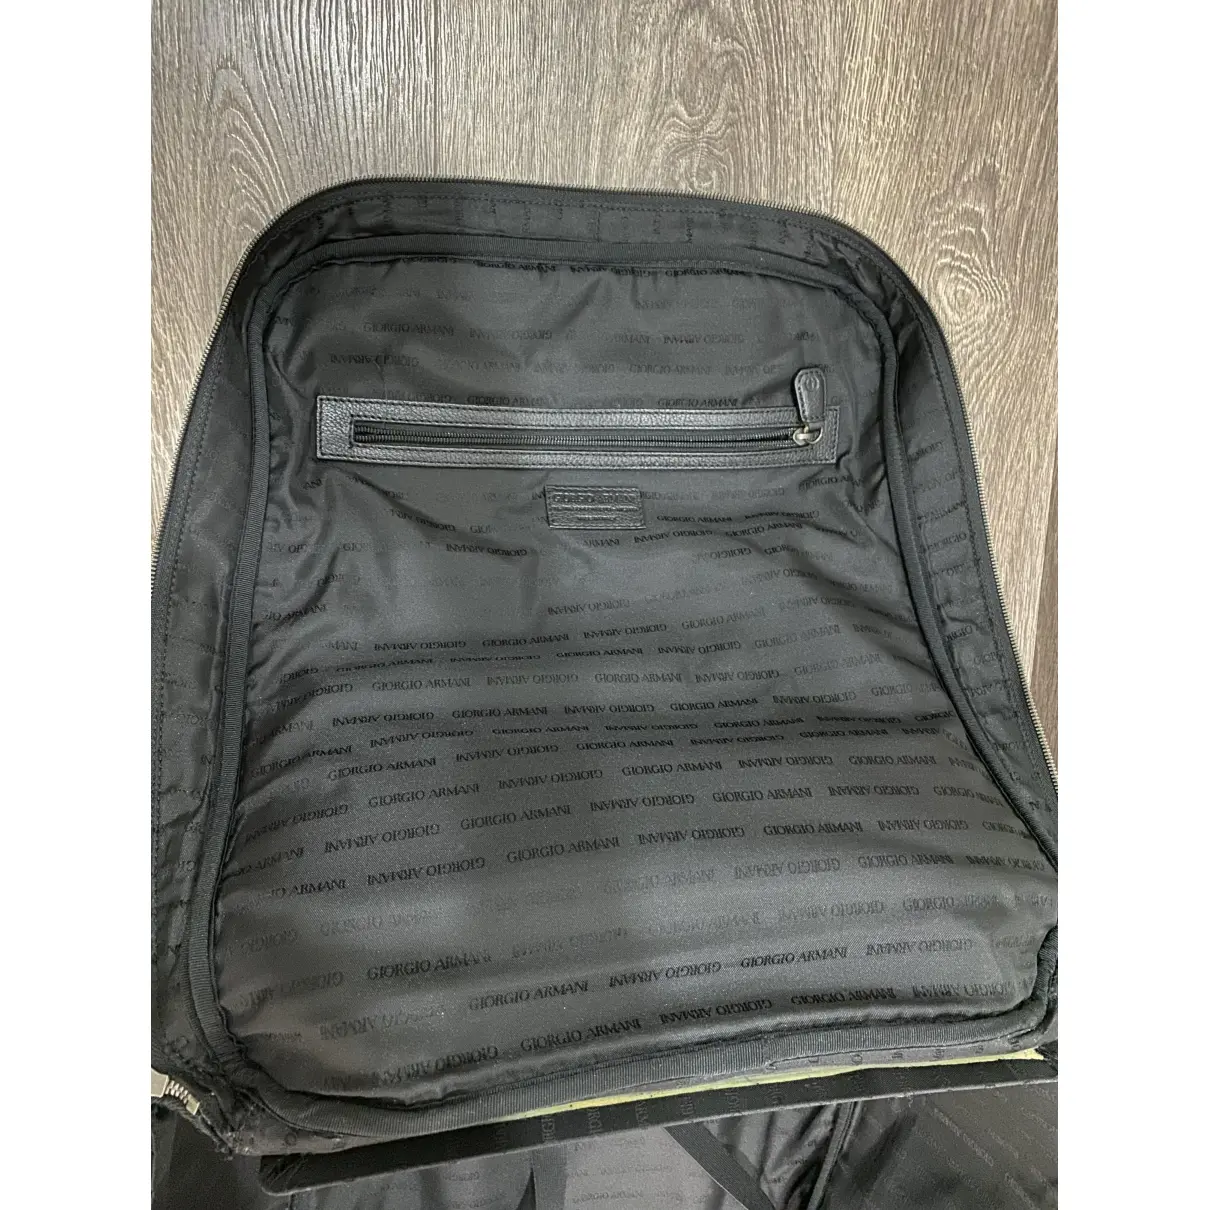 Giorgio Armani Leather travel bag for sale